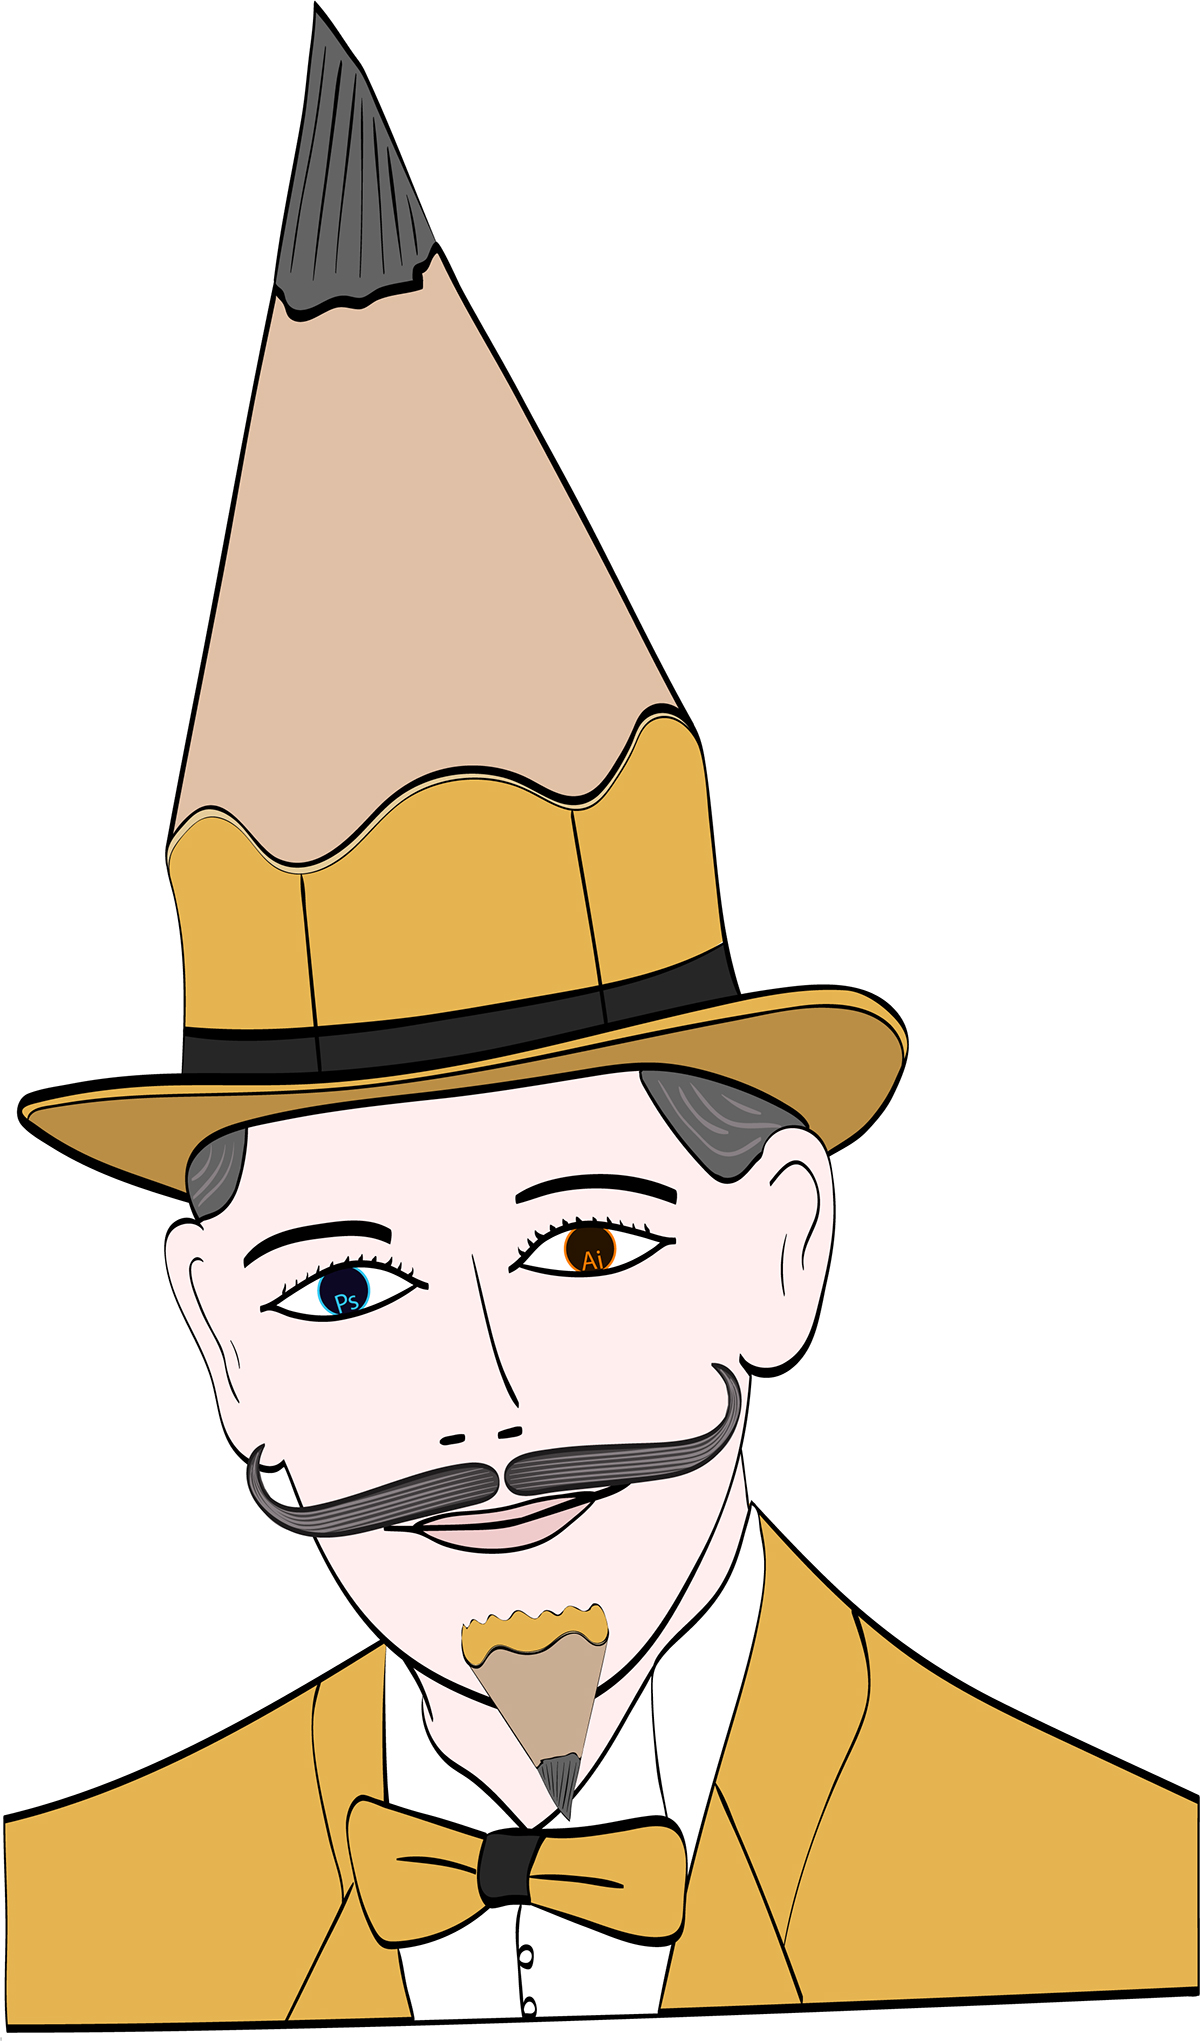 Creativity gentleman moustache beard top hat hat man suit vector pencil